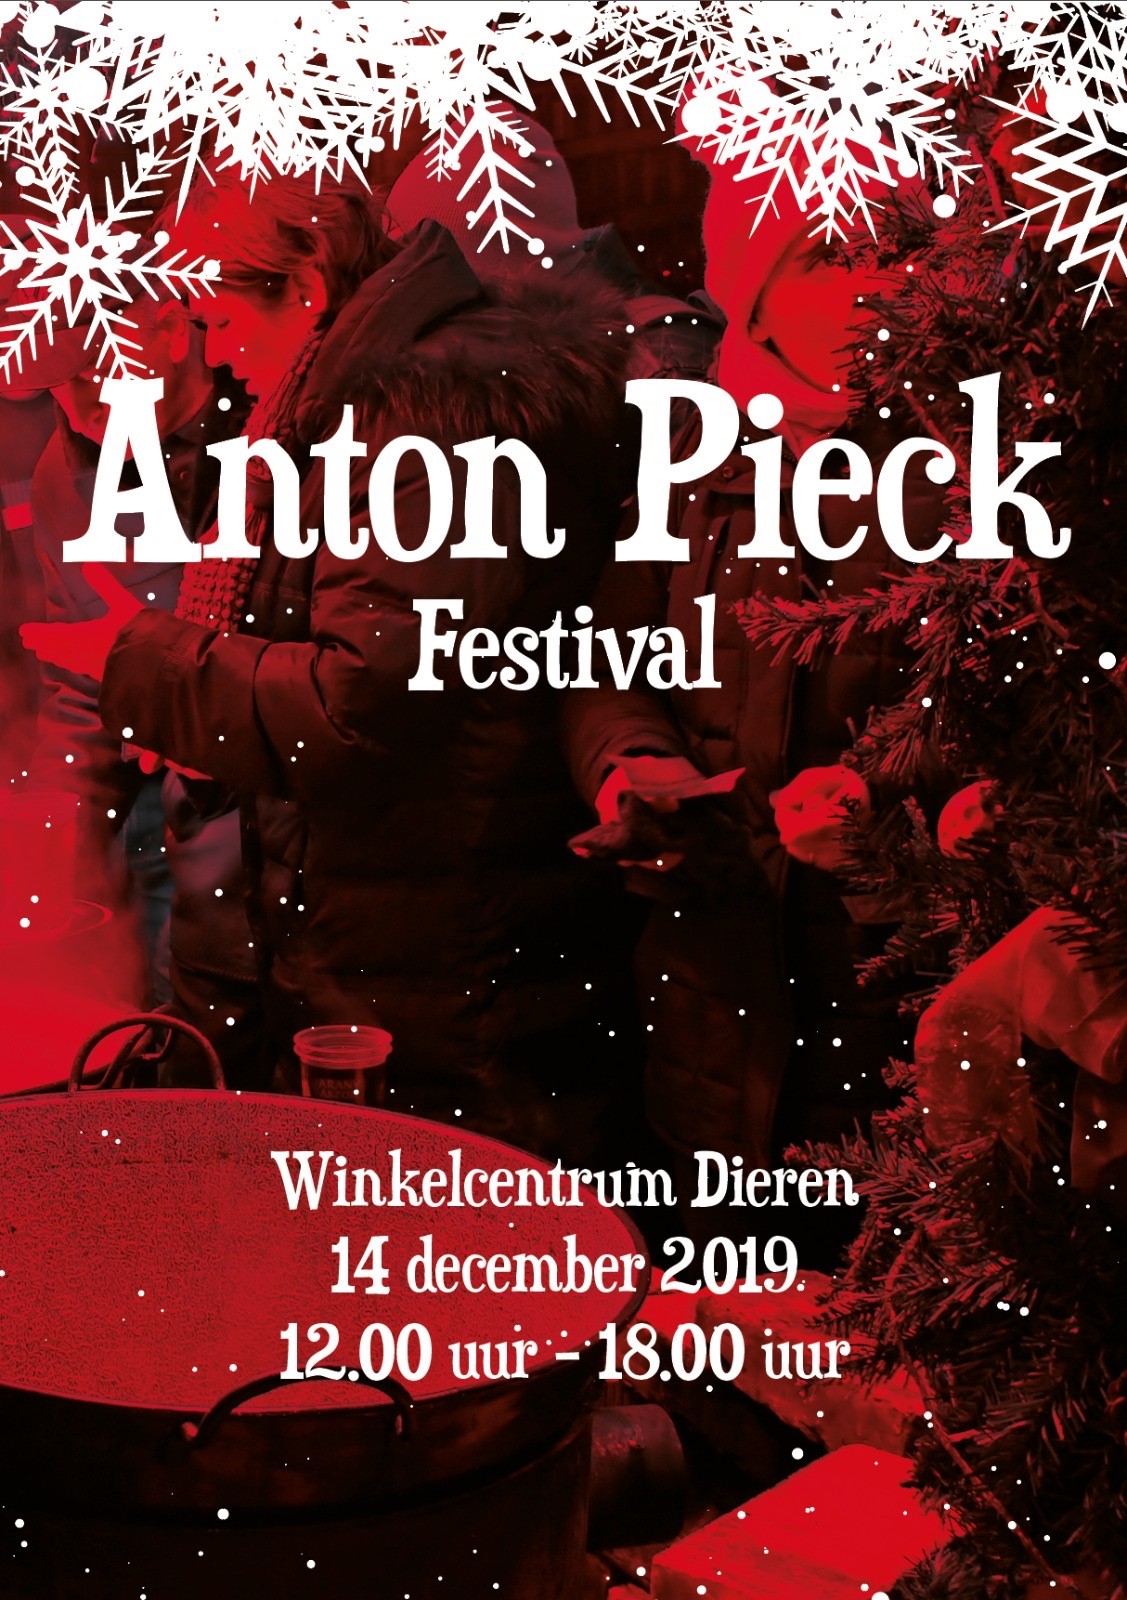 Anton Pieck Festival 14 dec 2019 1